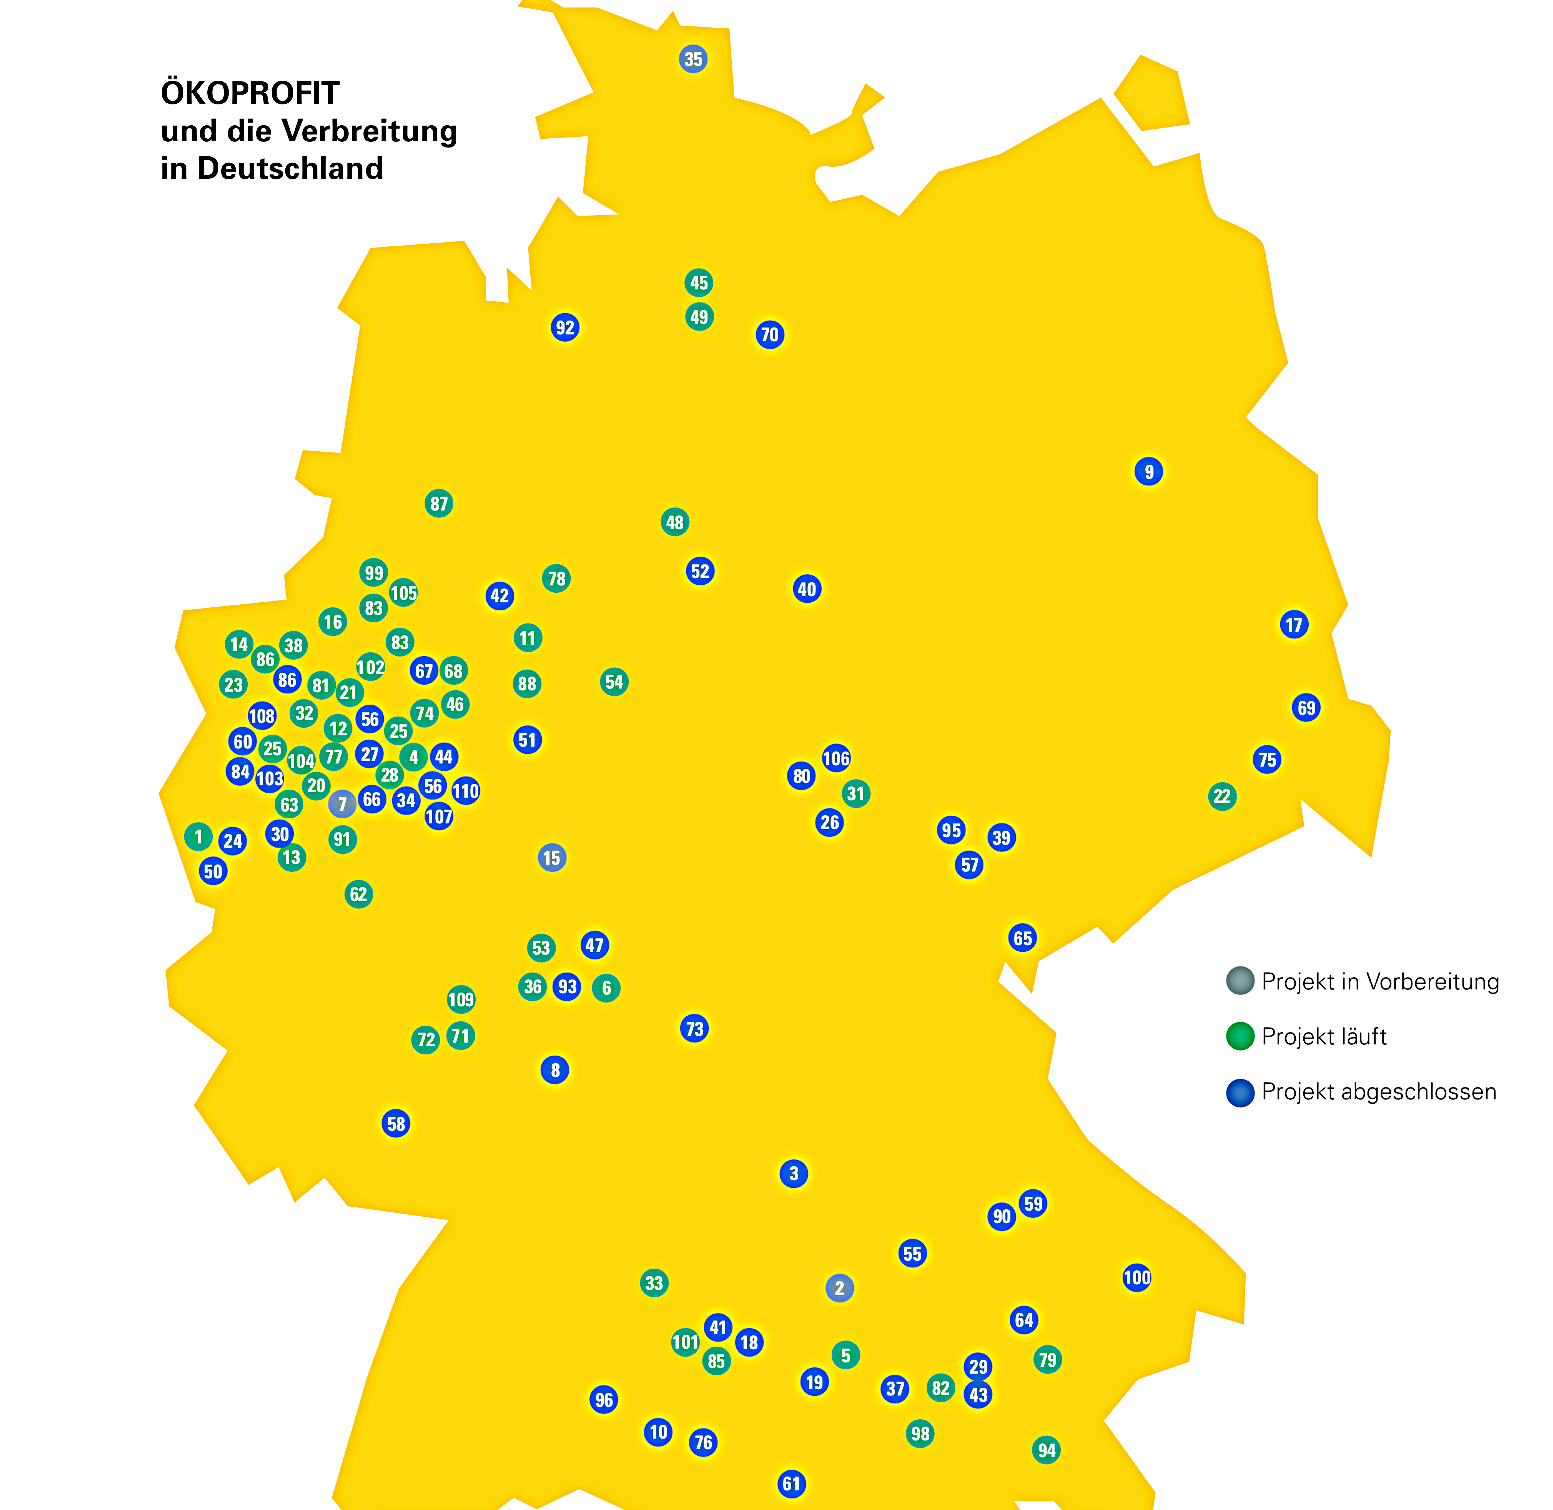 ÖKOPROFIT-Kommunen in Deutschland, 2016